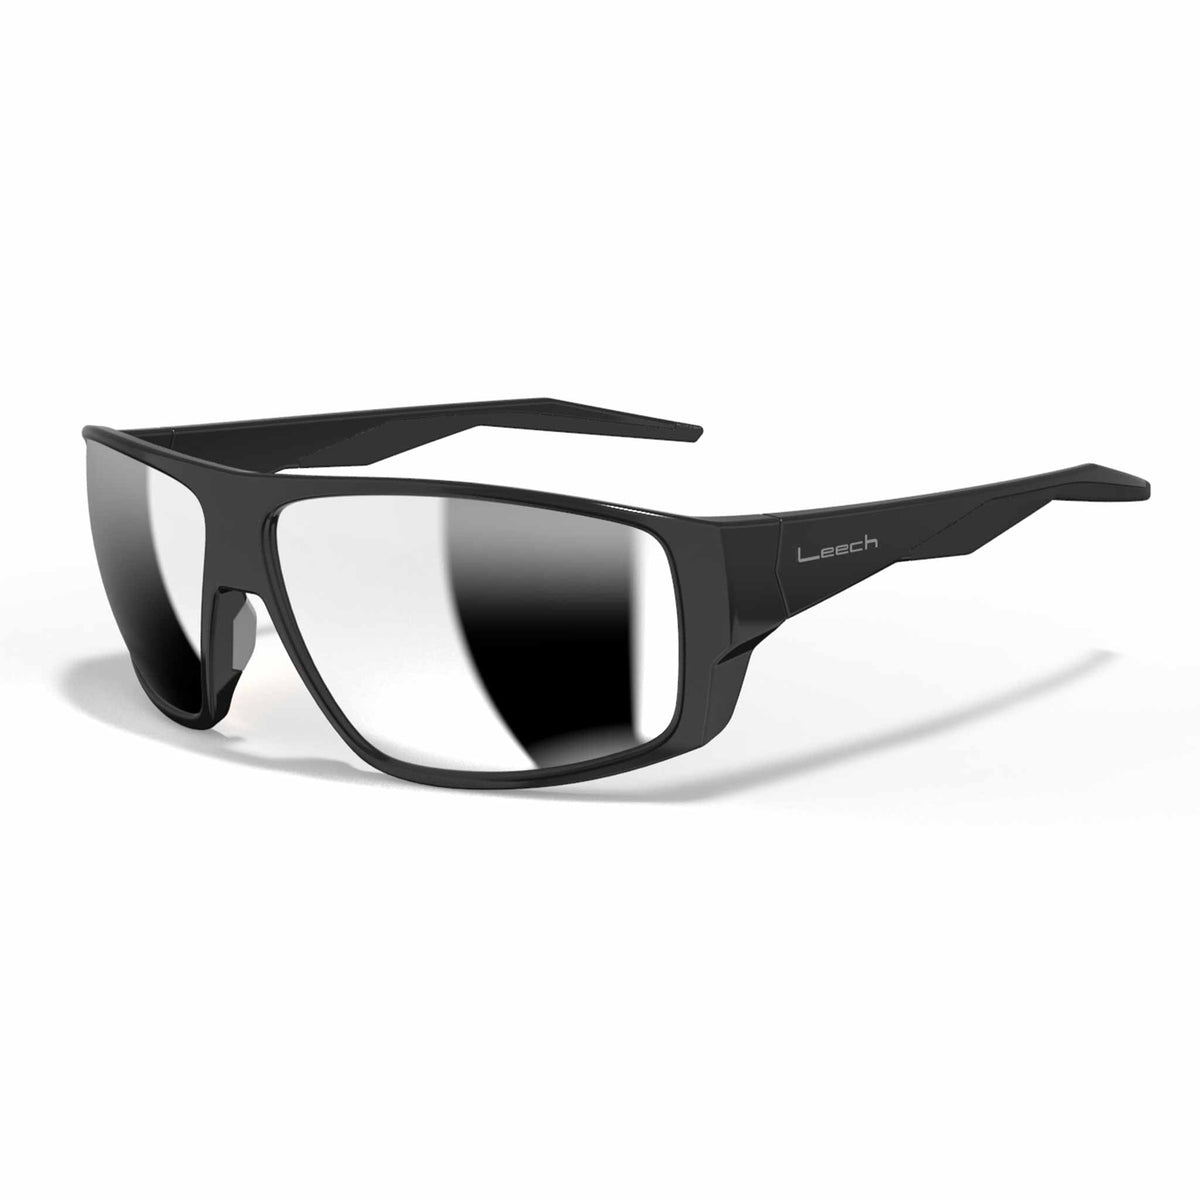 Leech Eyewear TARPOON TARPOON C2X Sunglasses